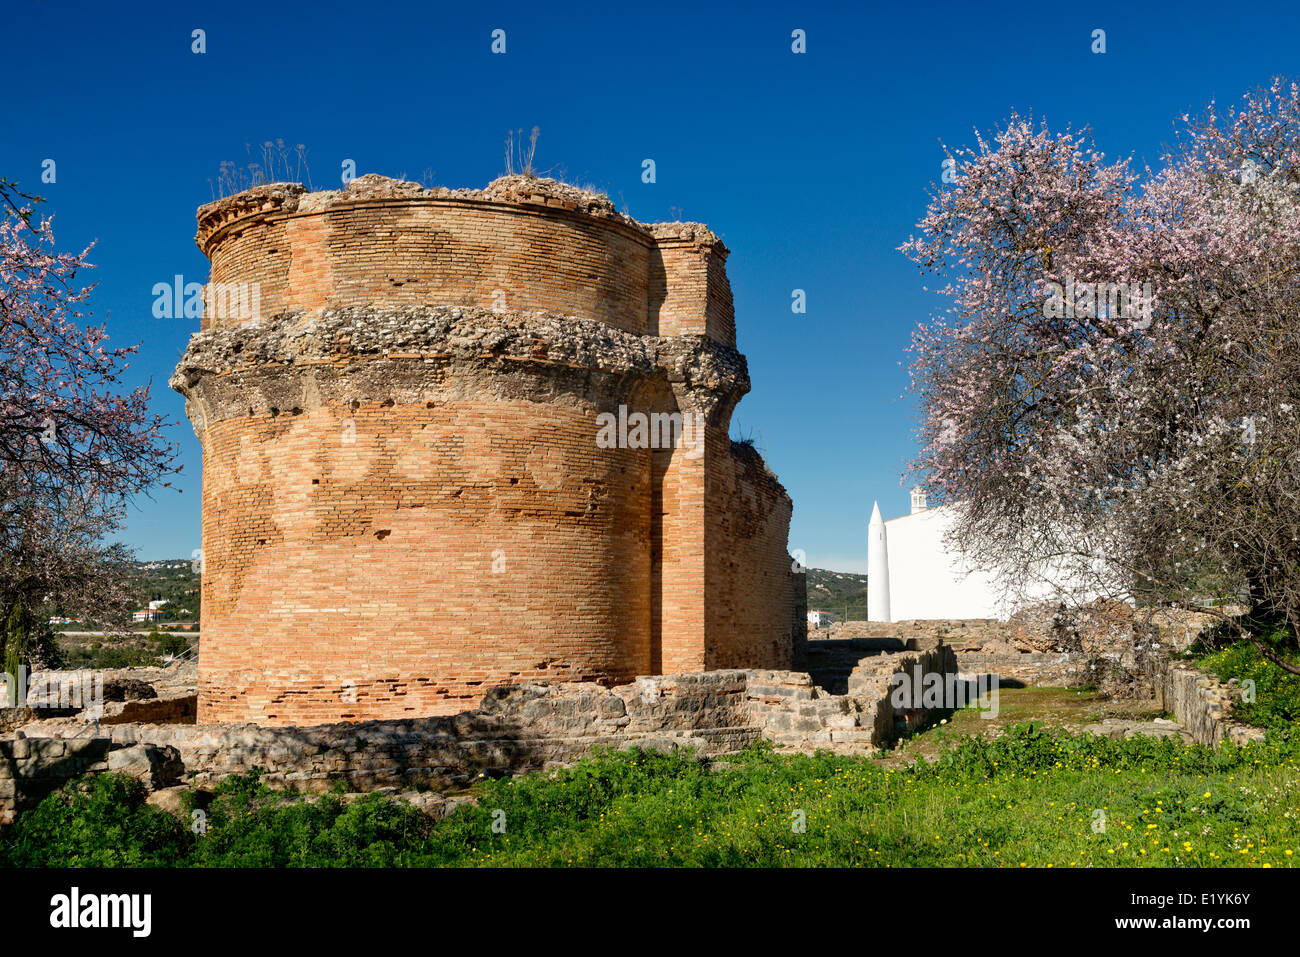 Sitio arqueológico romano, Estoi Milréu, Algarve, Portugal Foto de stock